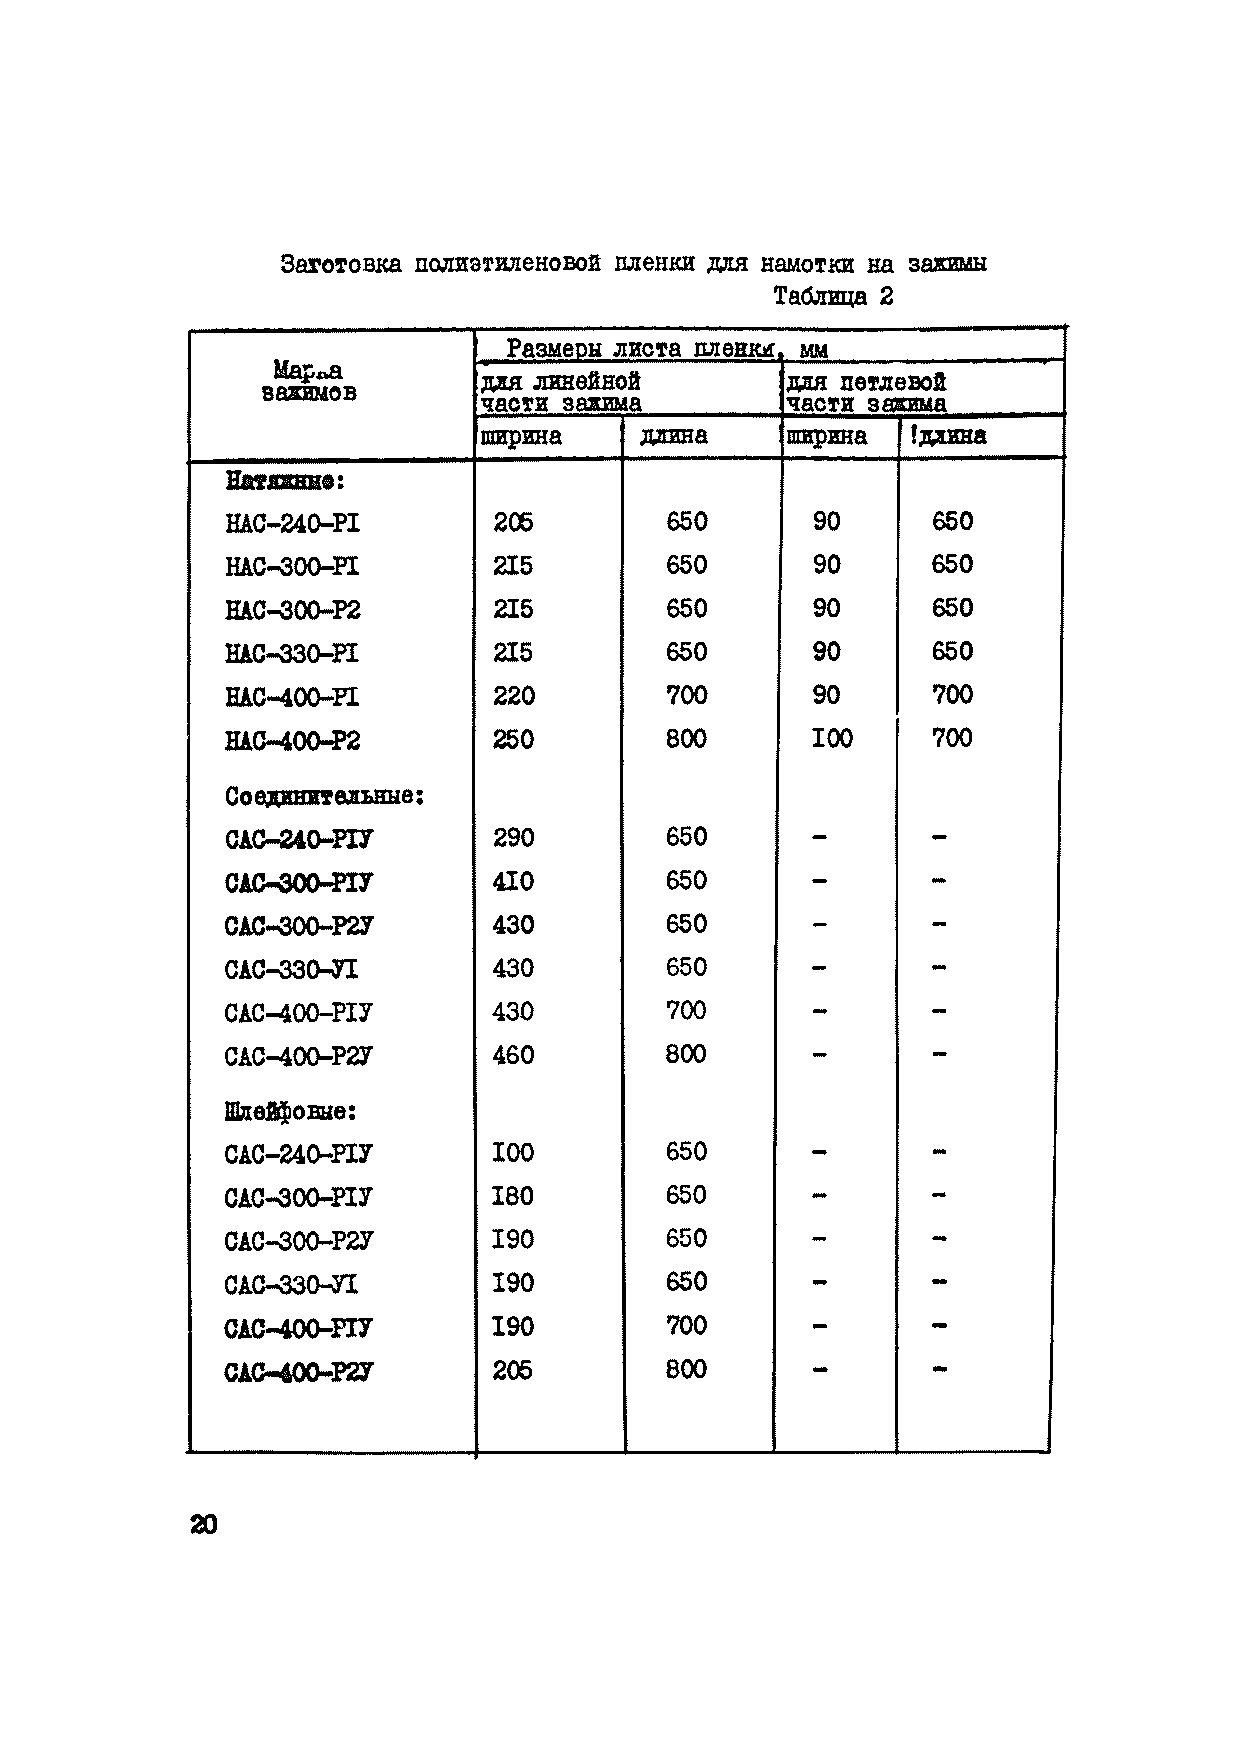 ВСН 34-71-1-83